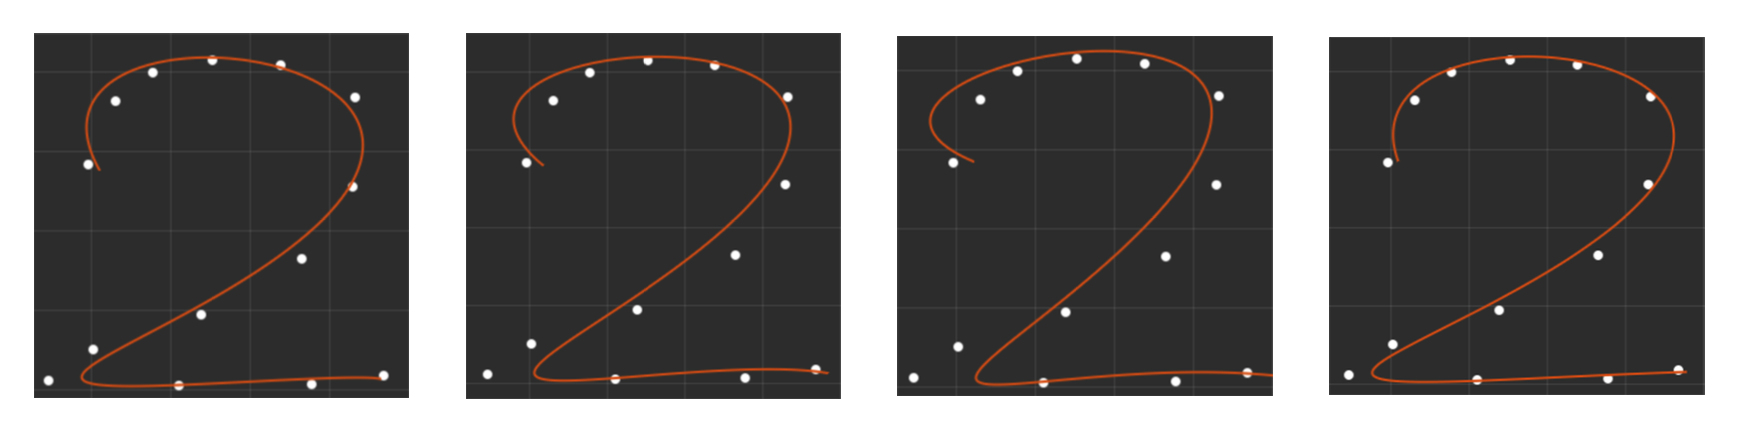 不同参数化对于5阶最小二乘拟合结果的影响。从左到右参数化类型依次为弦长参数化、中心参数化、均匀参数化和Foley-Nielsen参数化